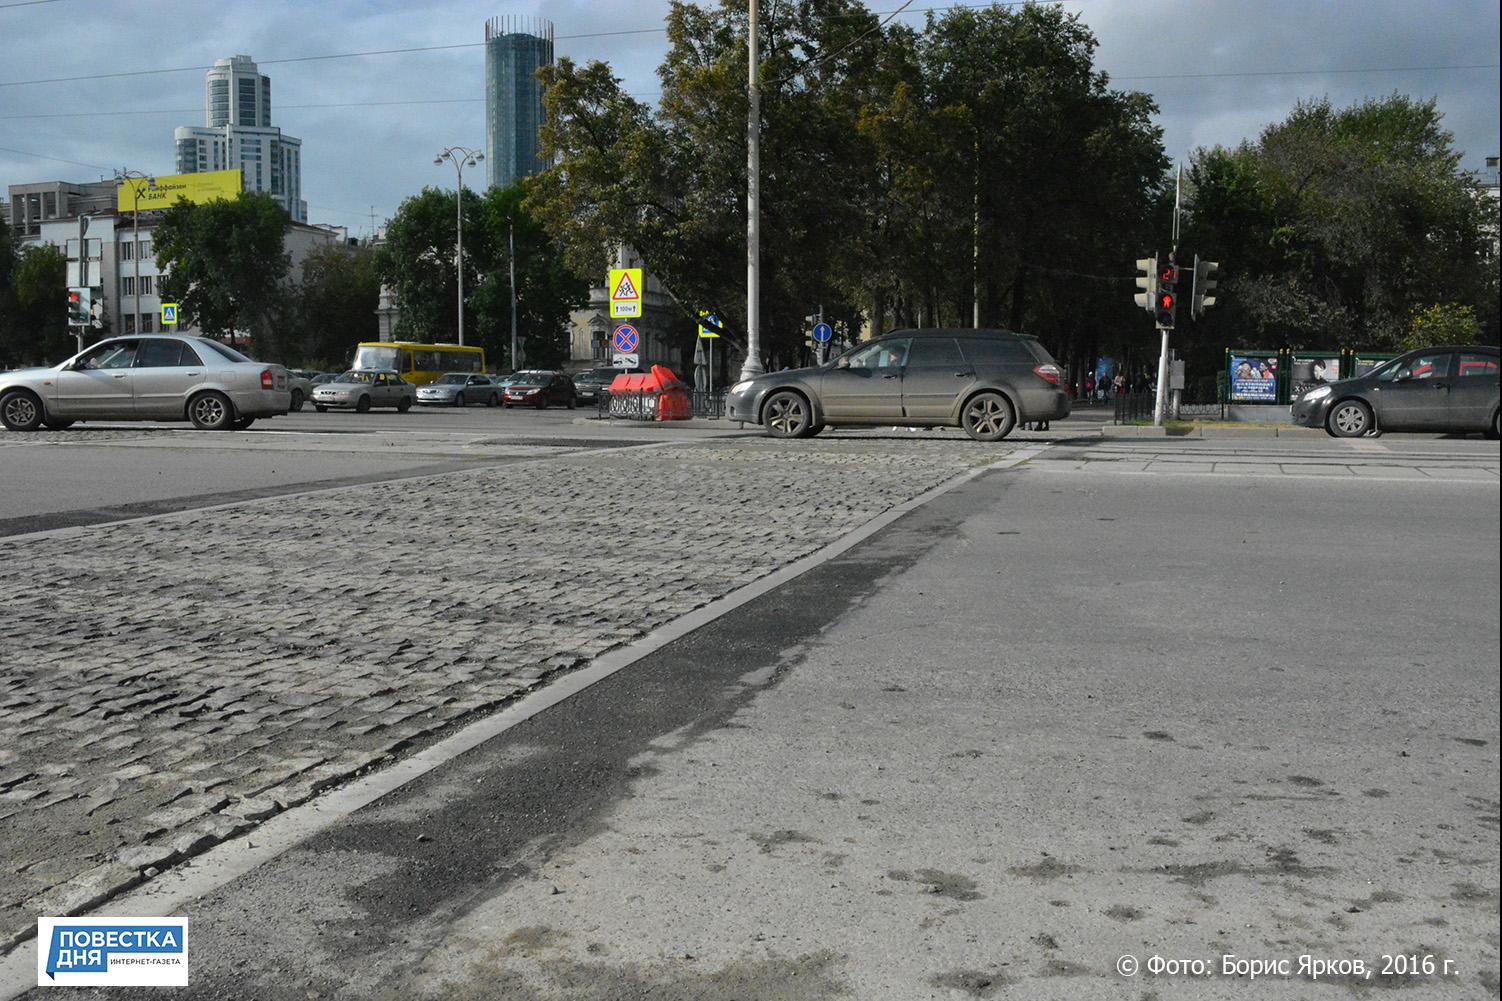 В Екатеринбурге экспериментируют с пешеходными переходами